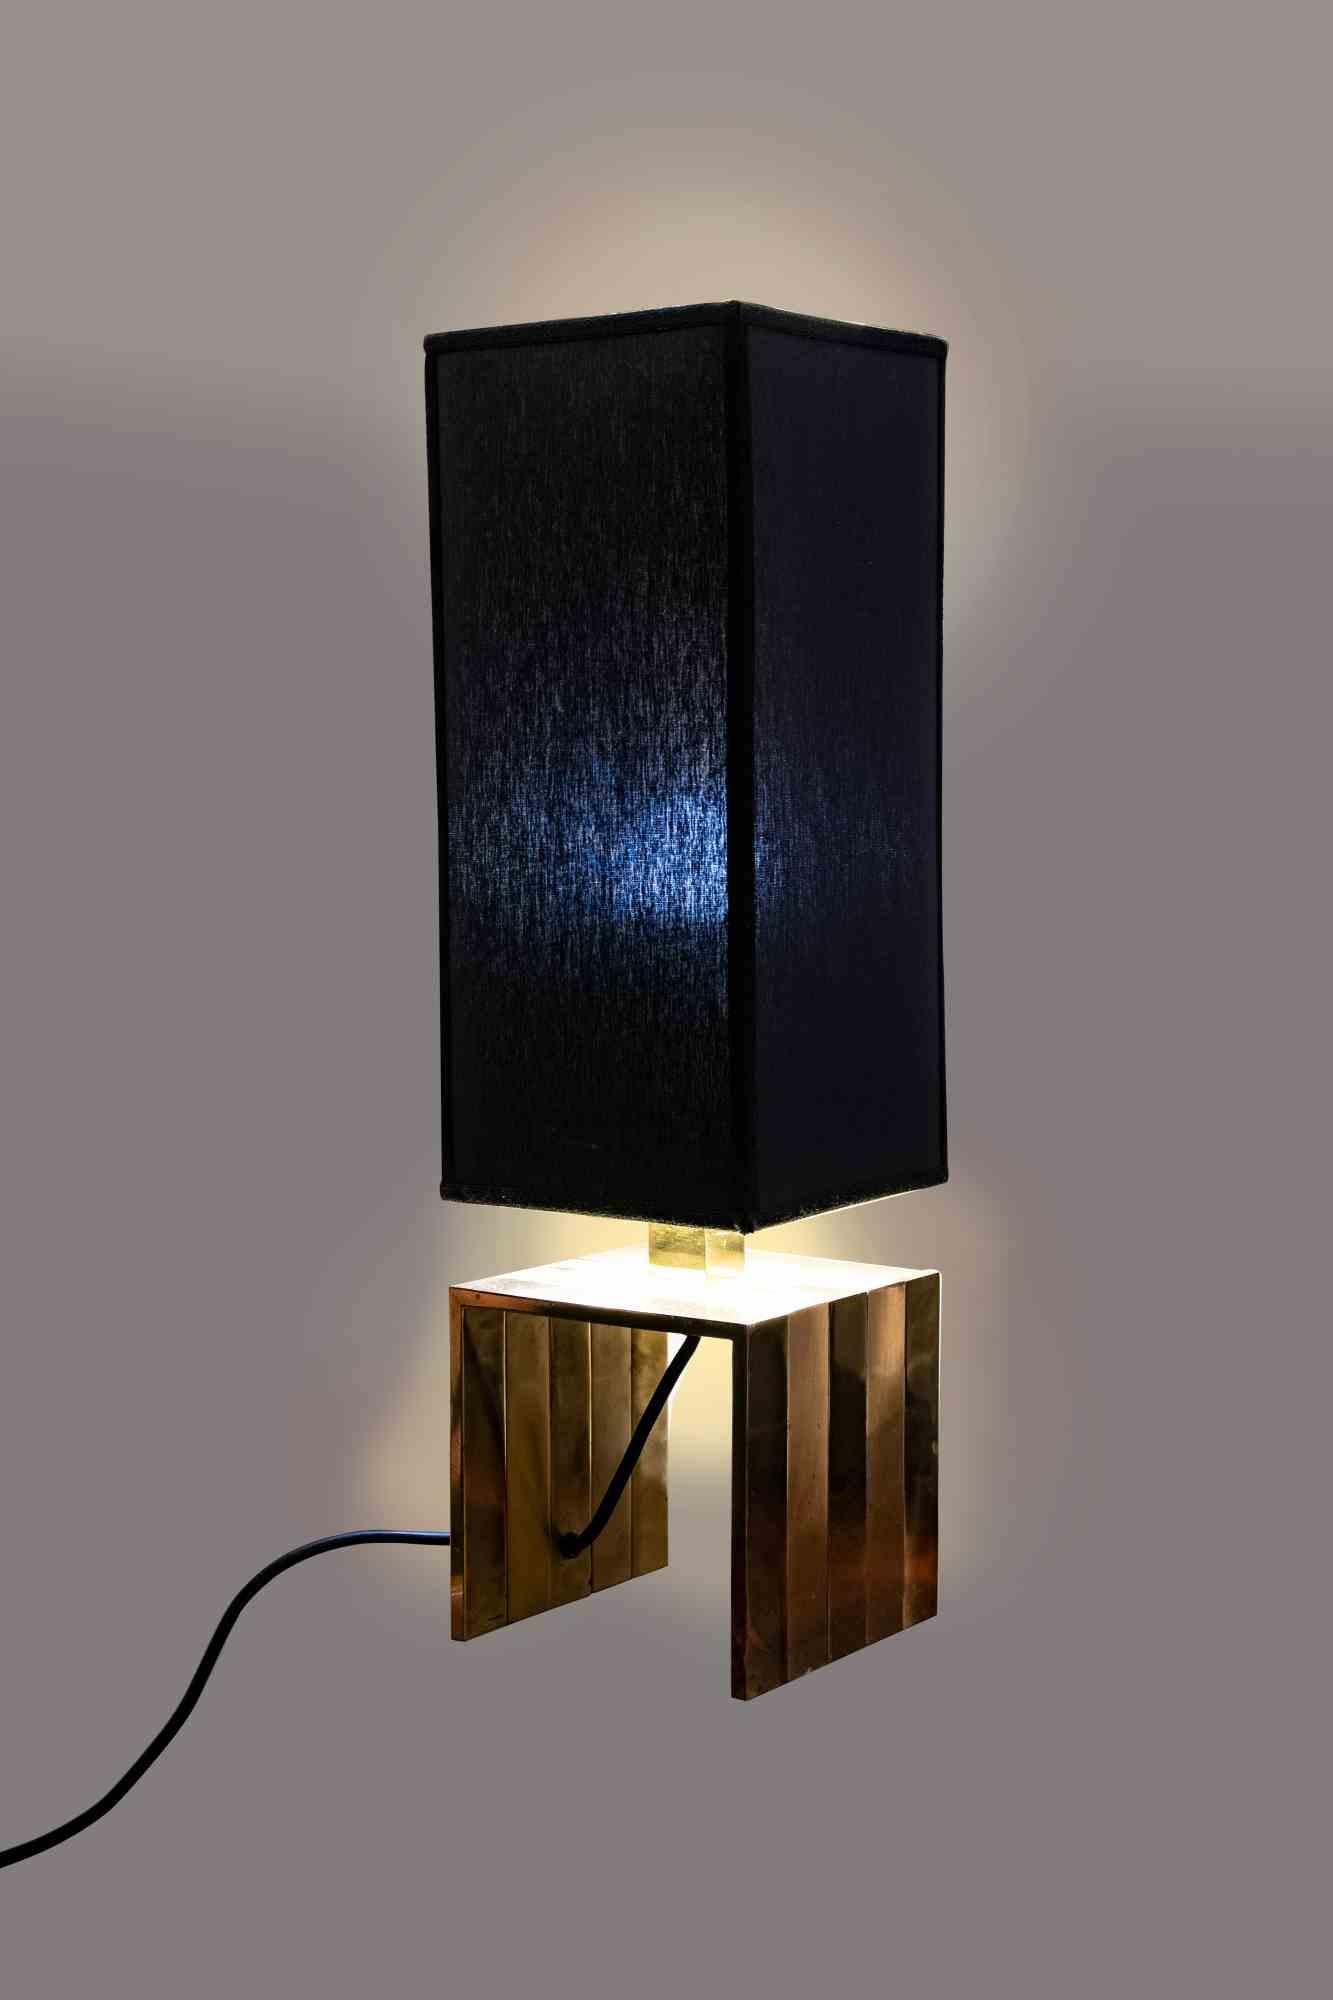 La lampe de table en laiton est un meuble design original réalisé dans les années 1970 par Fratelli Martini.

Un magnifique lampadaire vintage.

Réalisé en laiton.

Fabriquées en Italie.

Dimensions totales : 65 x 20 x 20 cm.
 